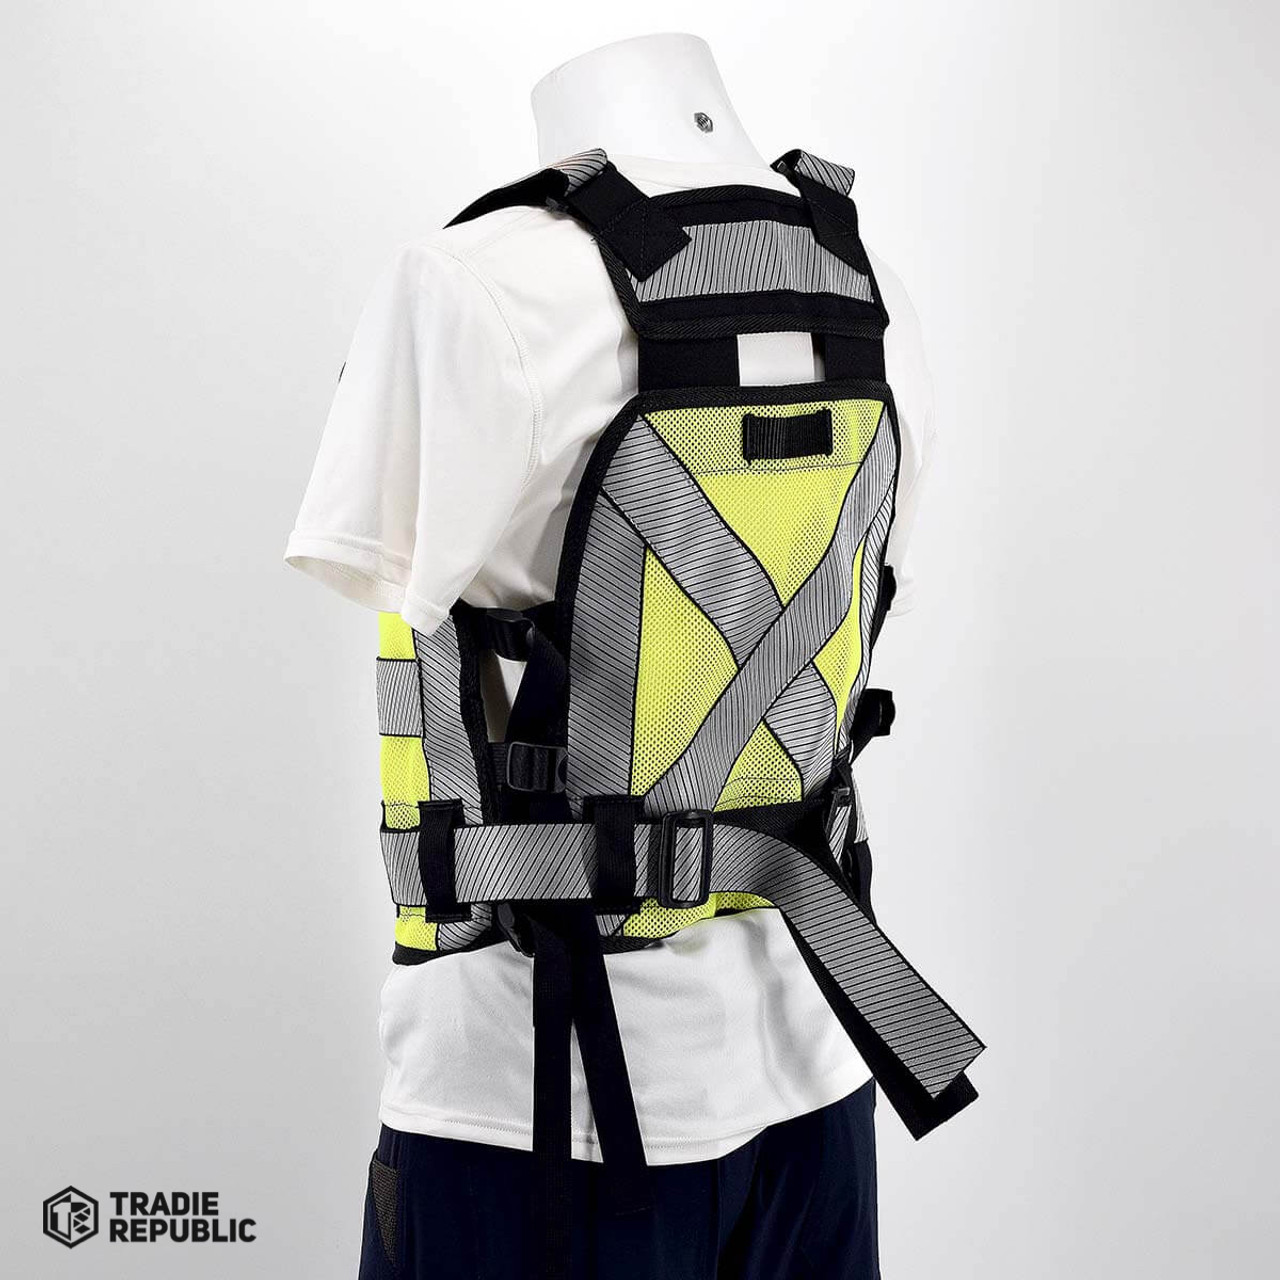  Diamondback Hi-Viz 701 Tool Vest